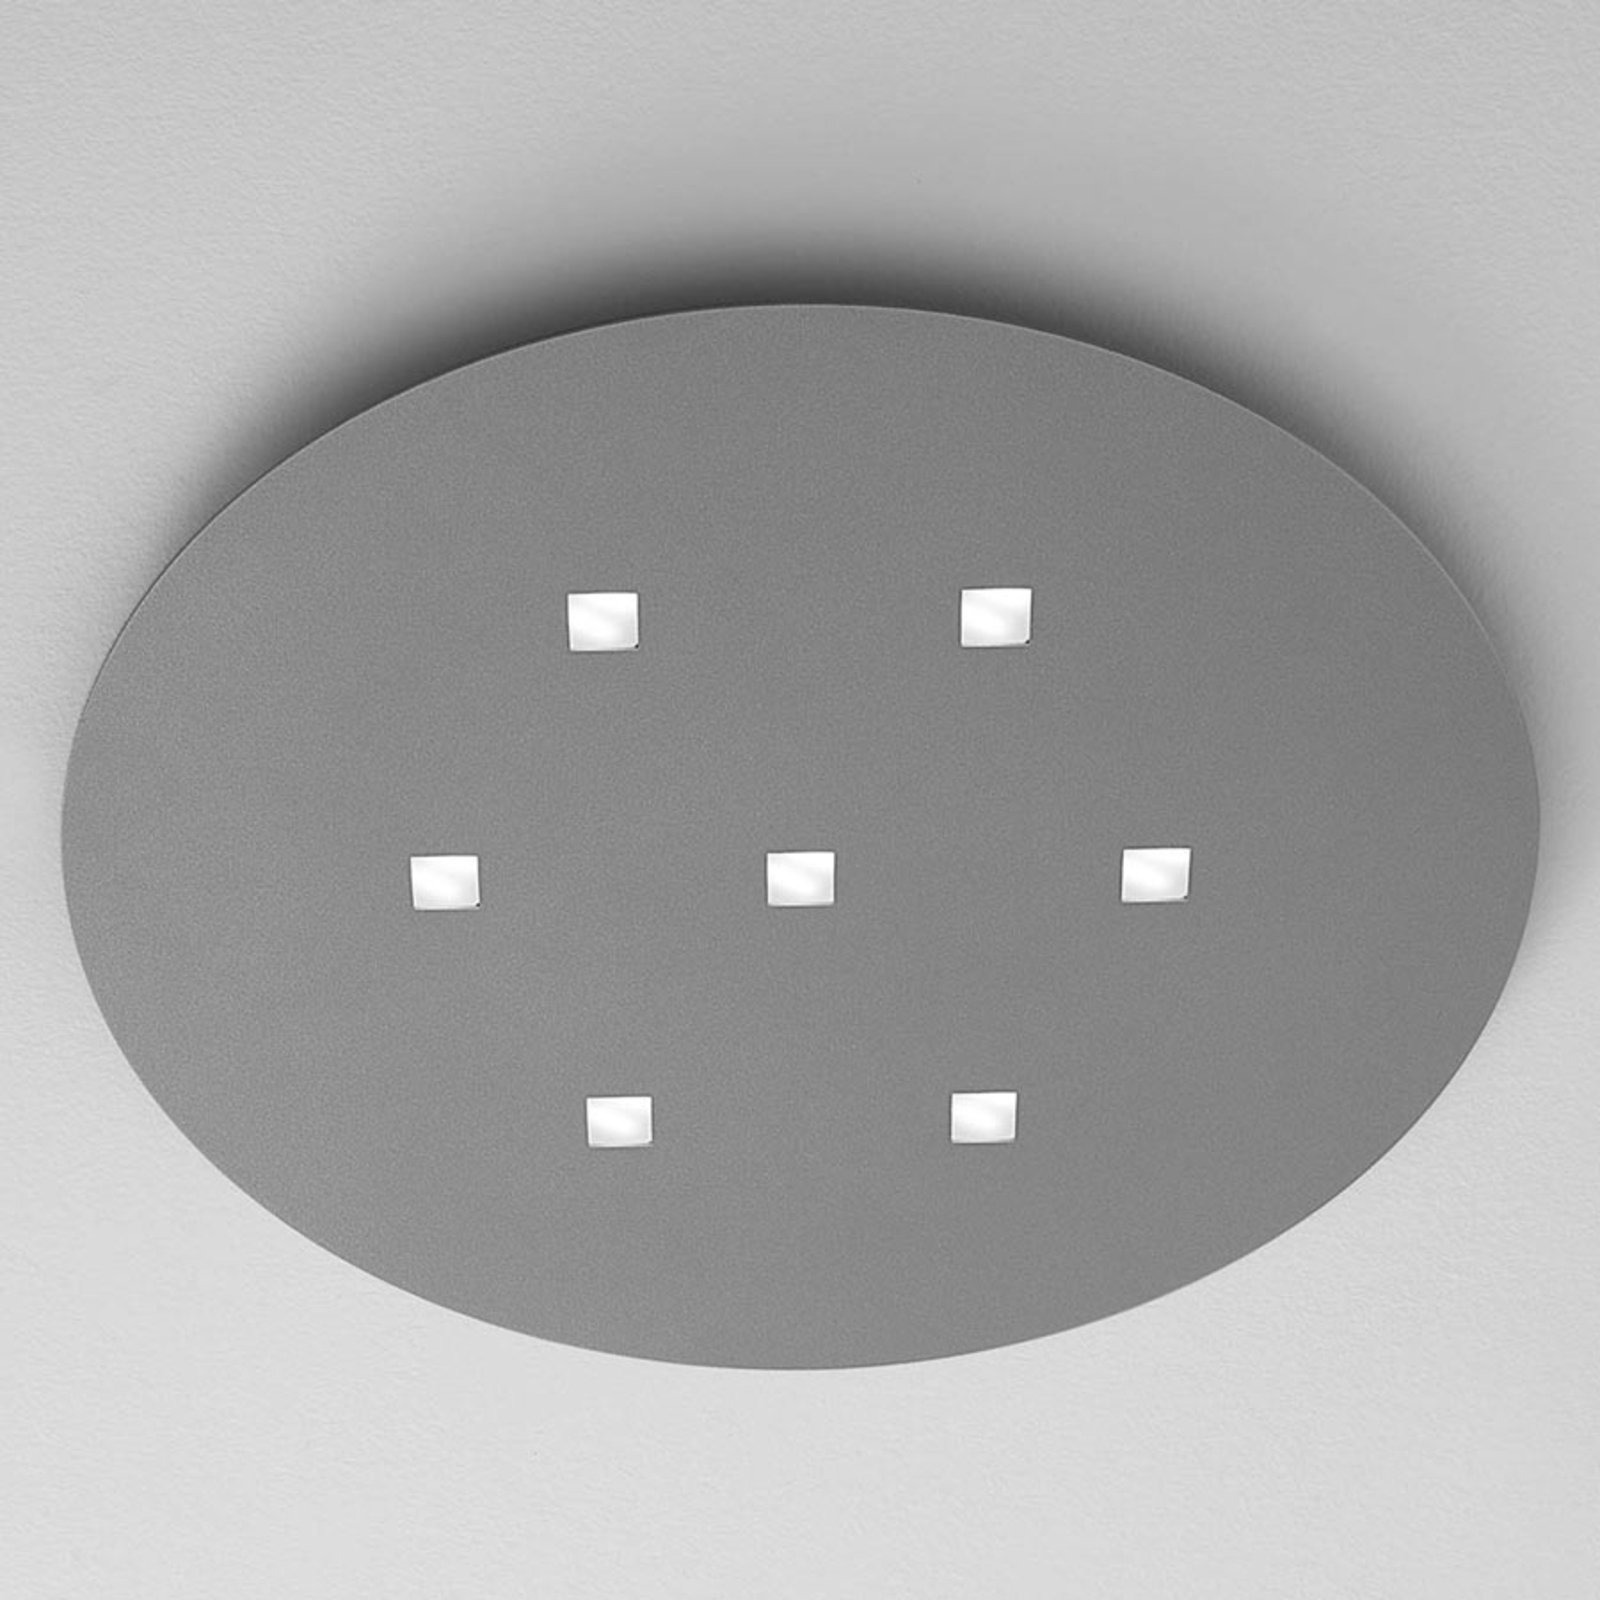 ICONE Isi - LED-taklampa i oval form